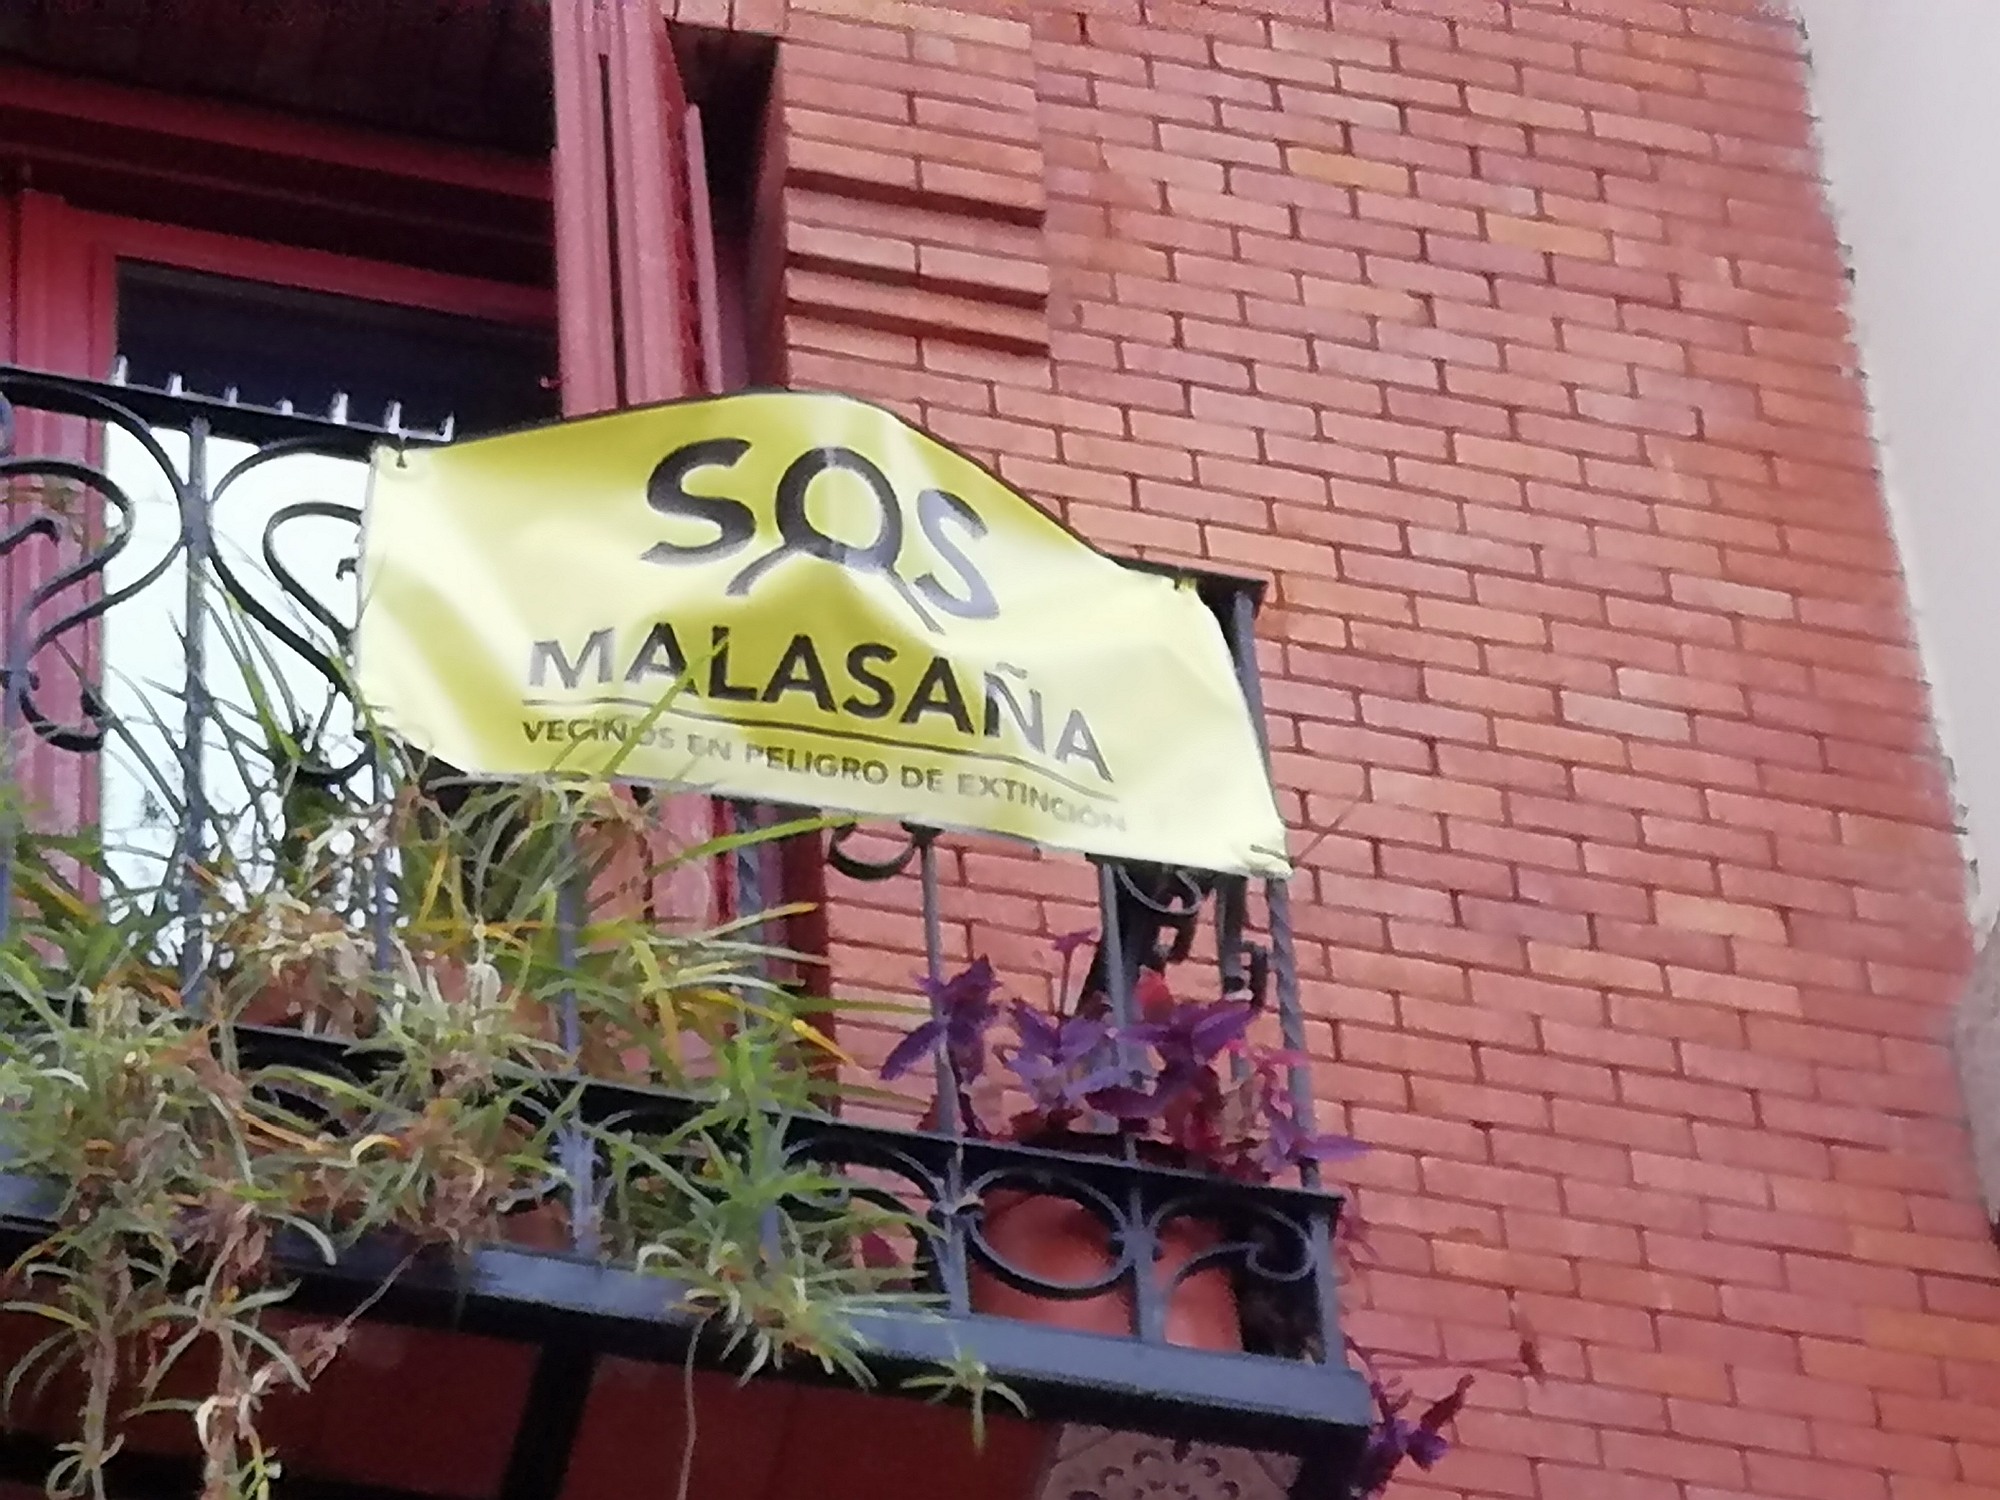 SOS Malasana